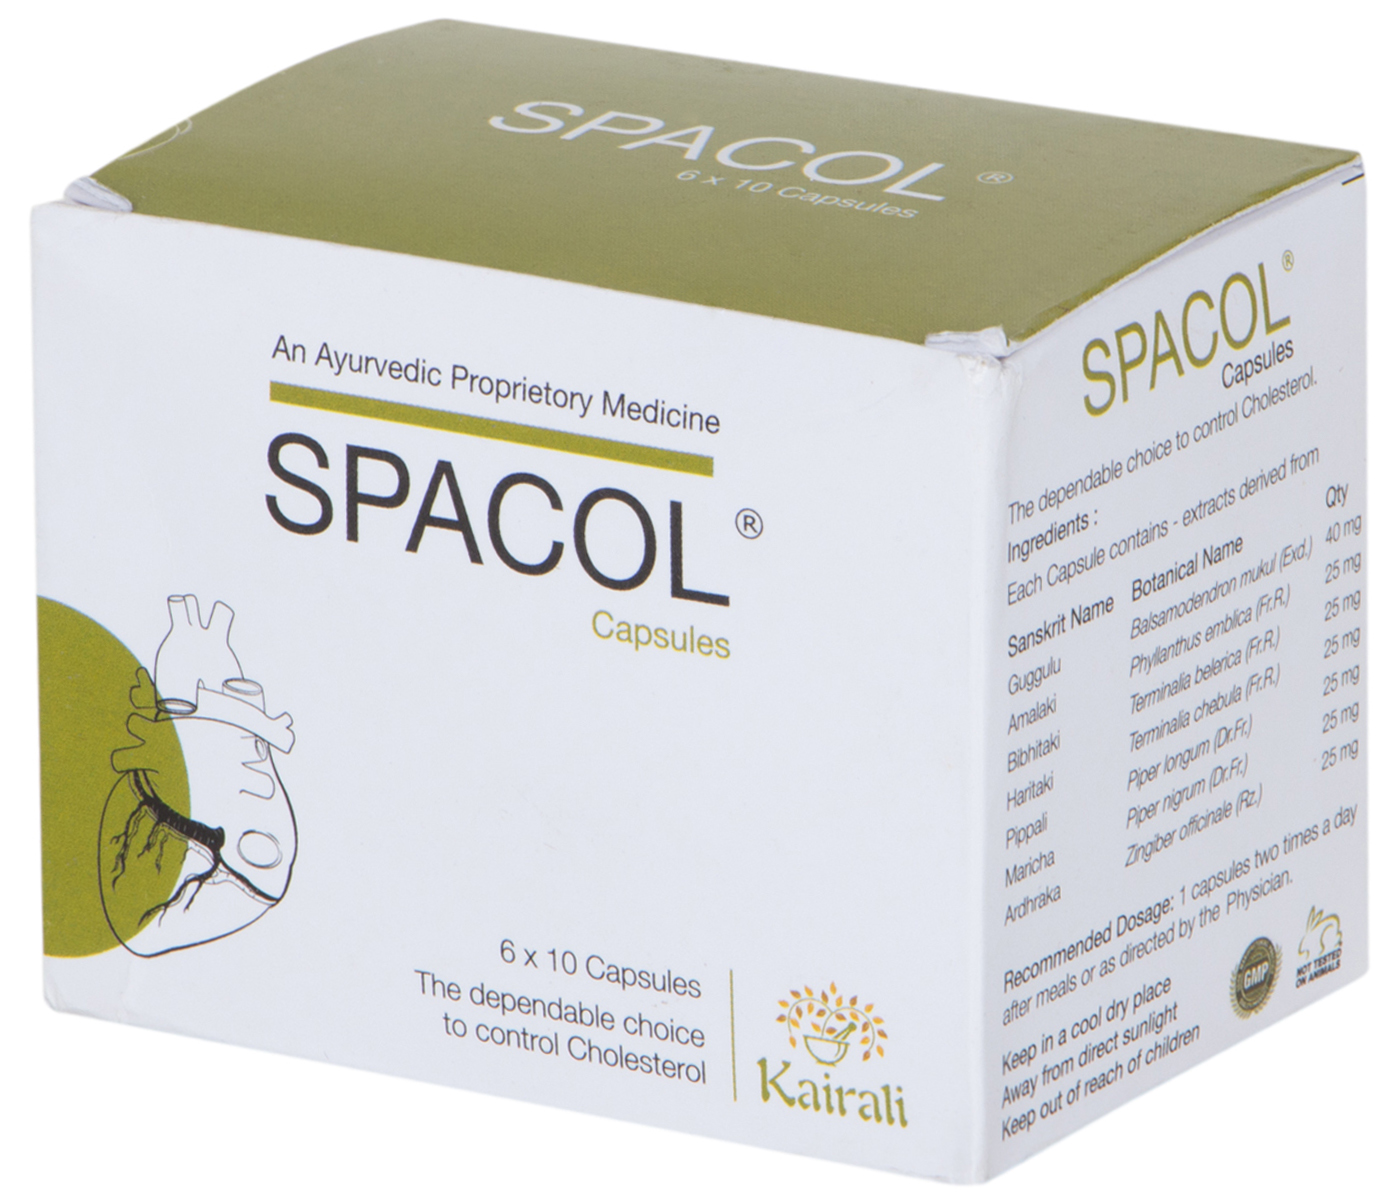 Buy Kairali Spacol Capsule at Best Price Online